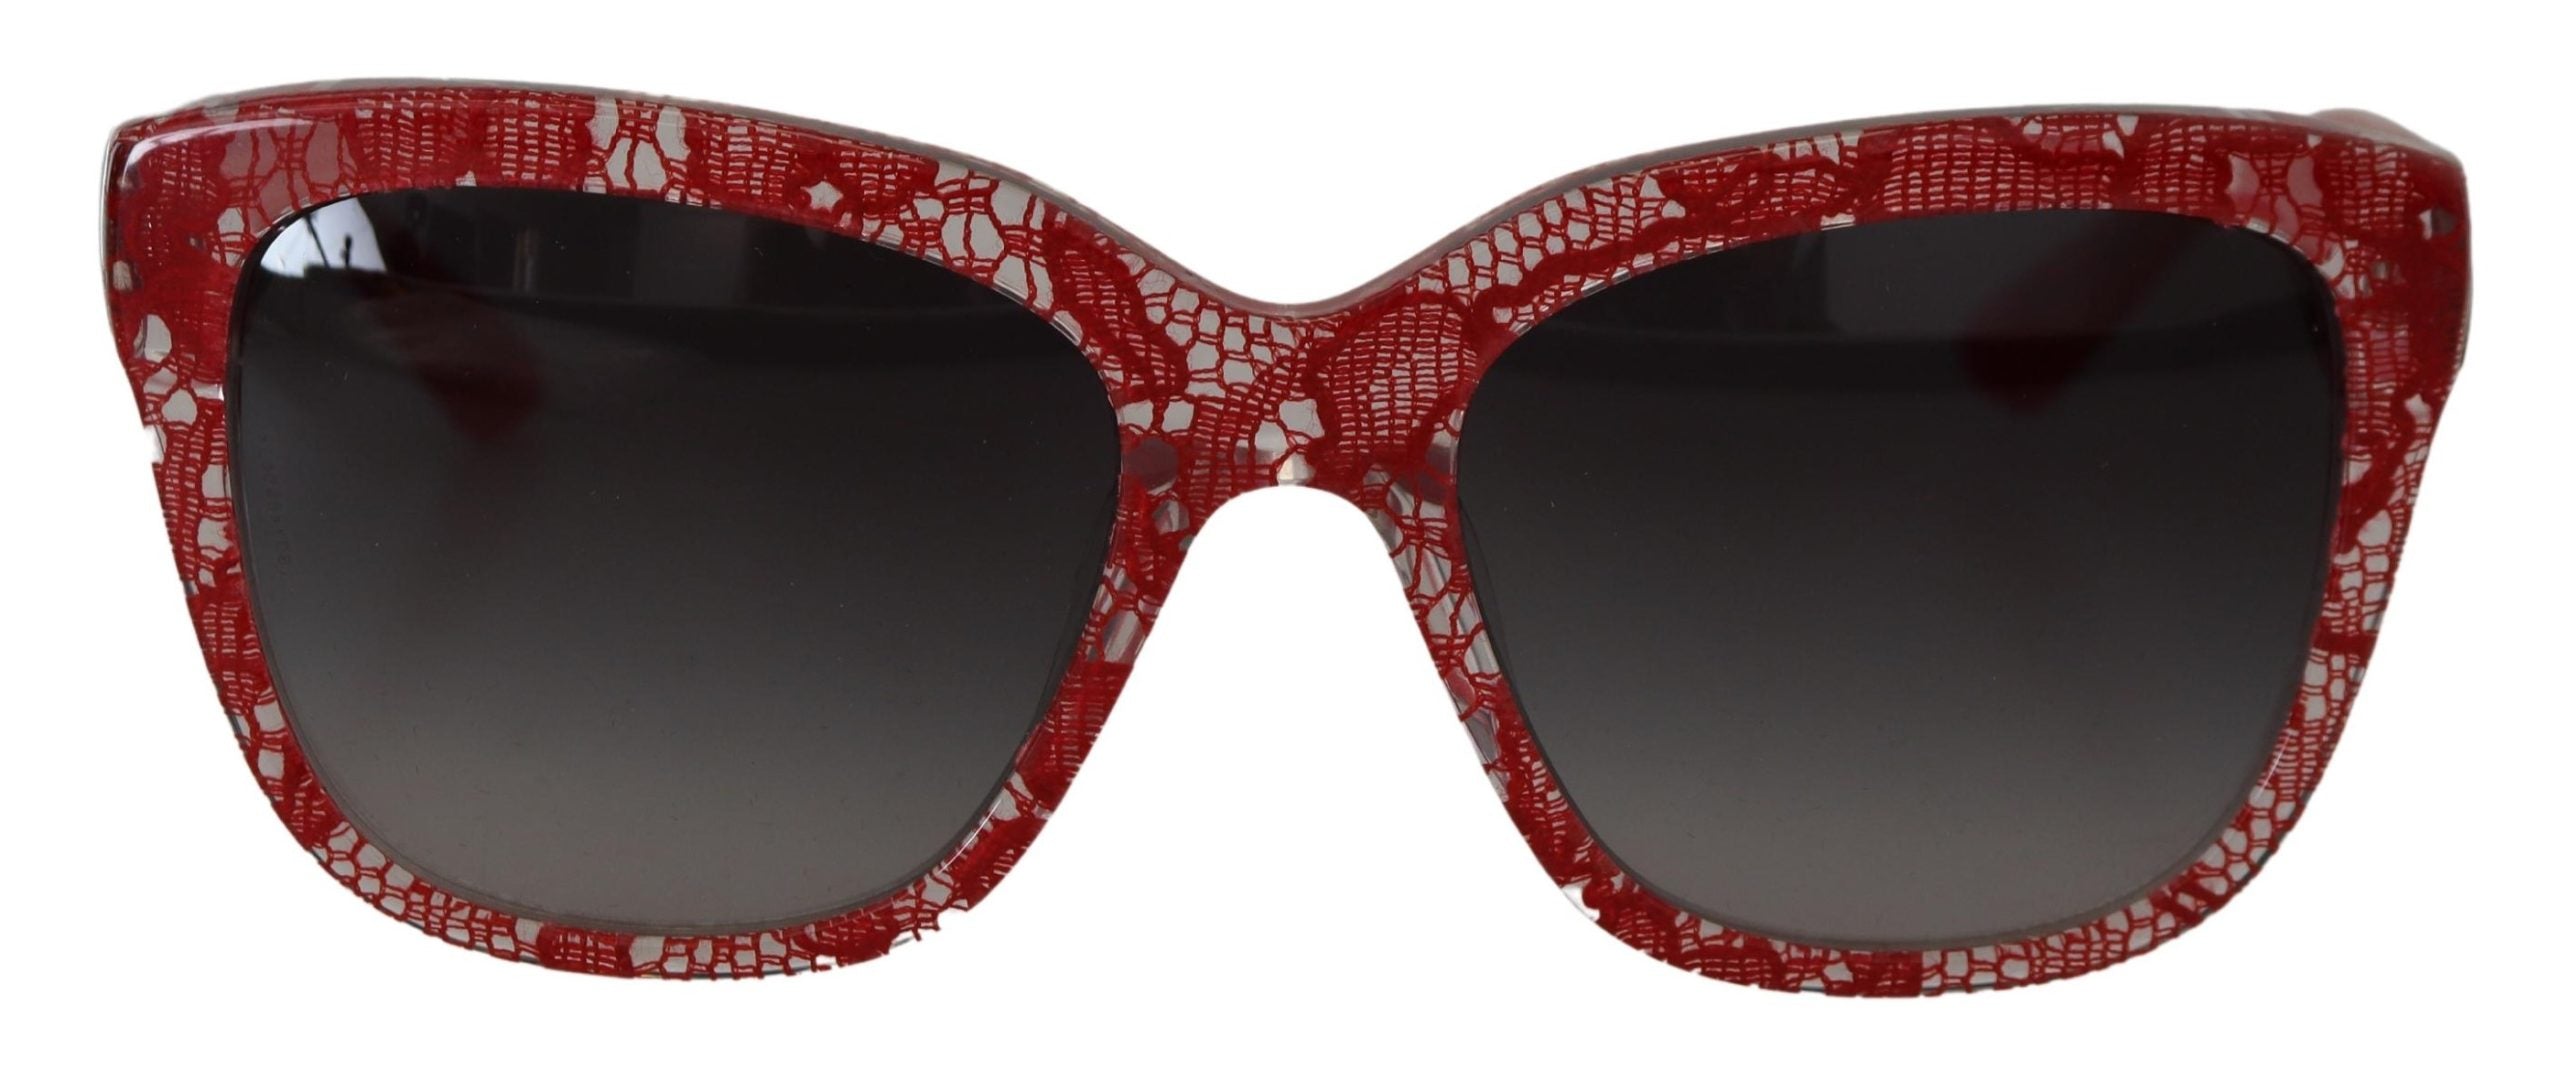 DOLCE & GABBANA Dolce & Gabbana Lace Acetate Rectangle Shades DG4226F Women's Sunglasses